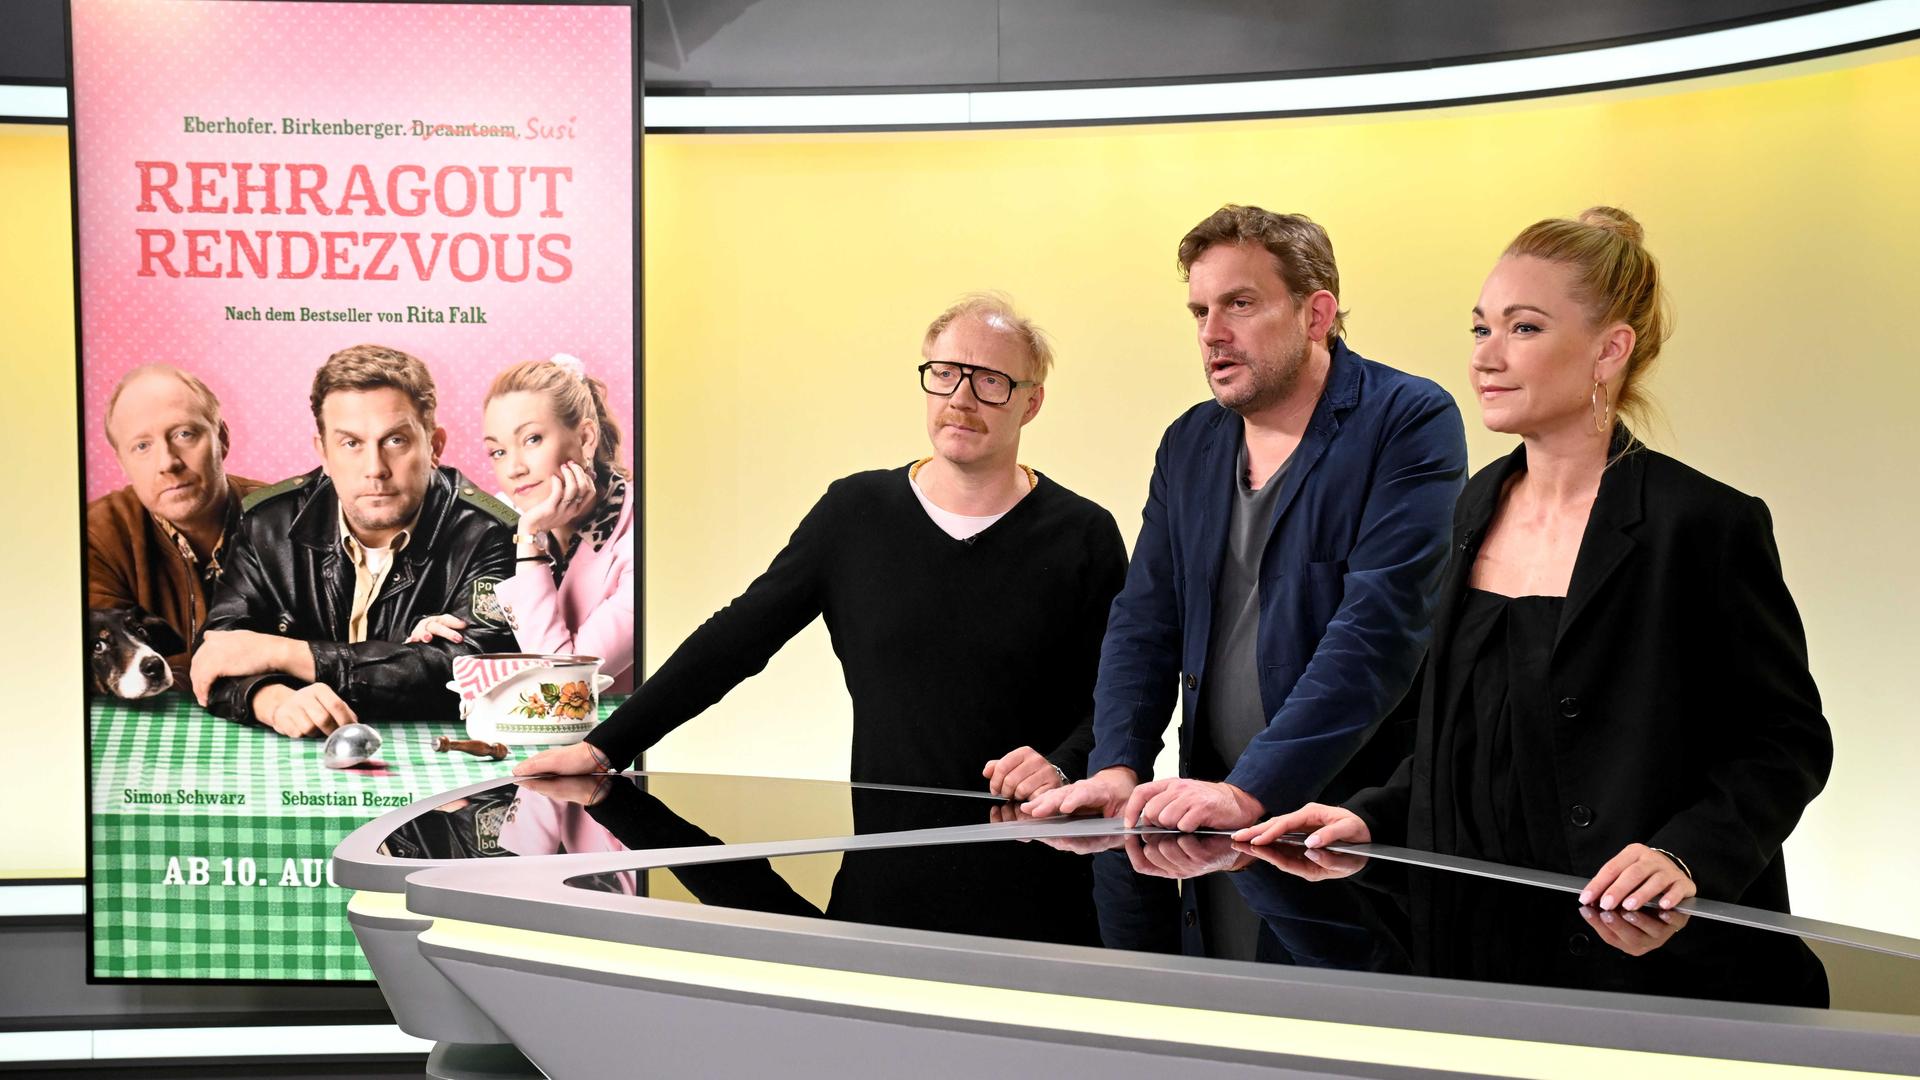 Von links nach rechts stehen die Schauspieler Simon Schwarz, Sebastian Bezzel und Lisa Maria Potthoff stehen in einem Studio an einem Tisch, links von ihnen ist ein Filmplakat zu sehen mit dem Titel "Rehragout-Rendezvous". 